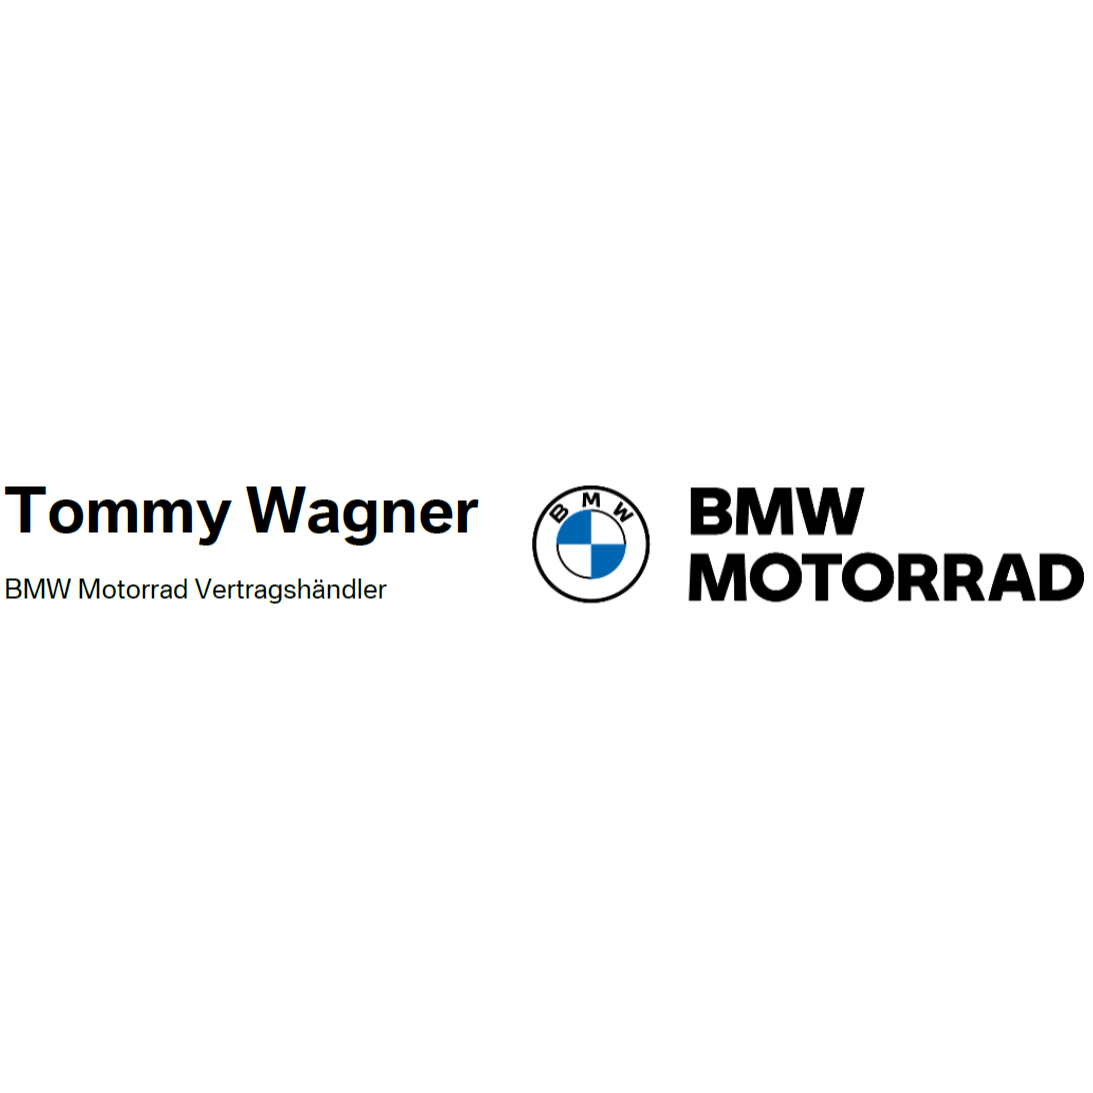 Tommy Wagner Motorrad GmbH in München Logo